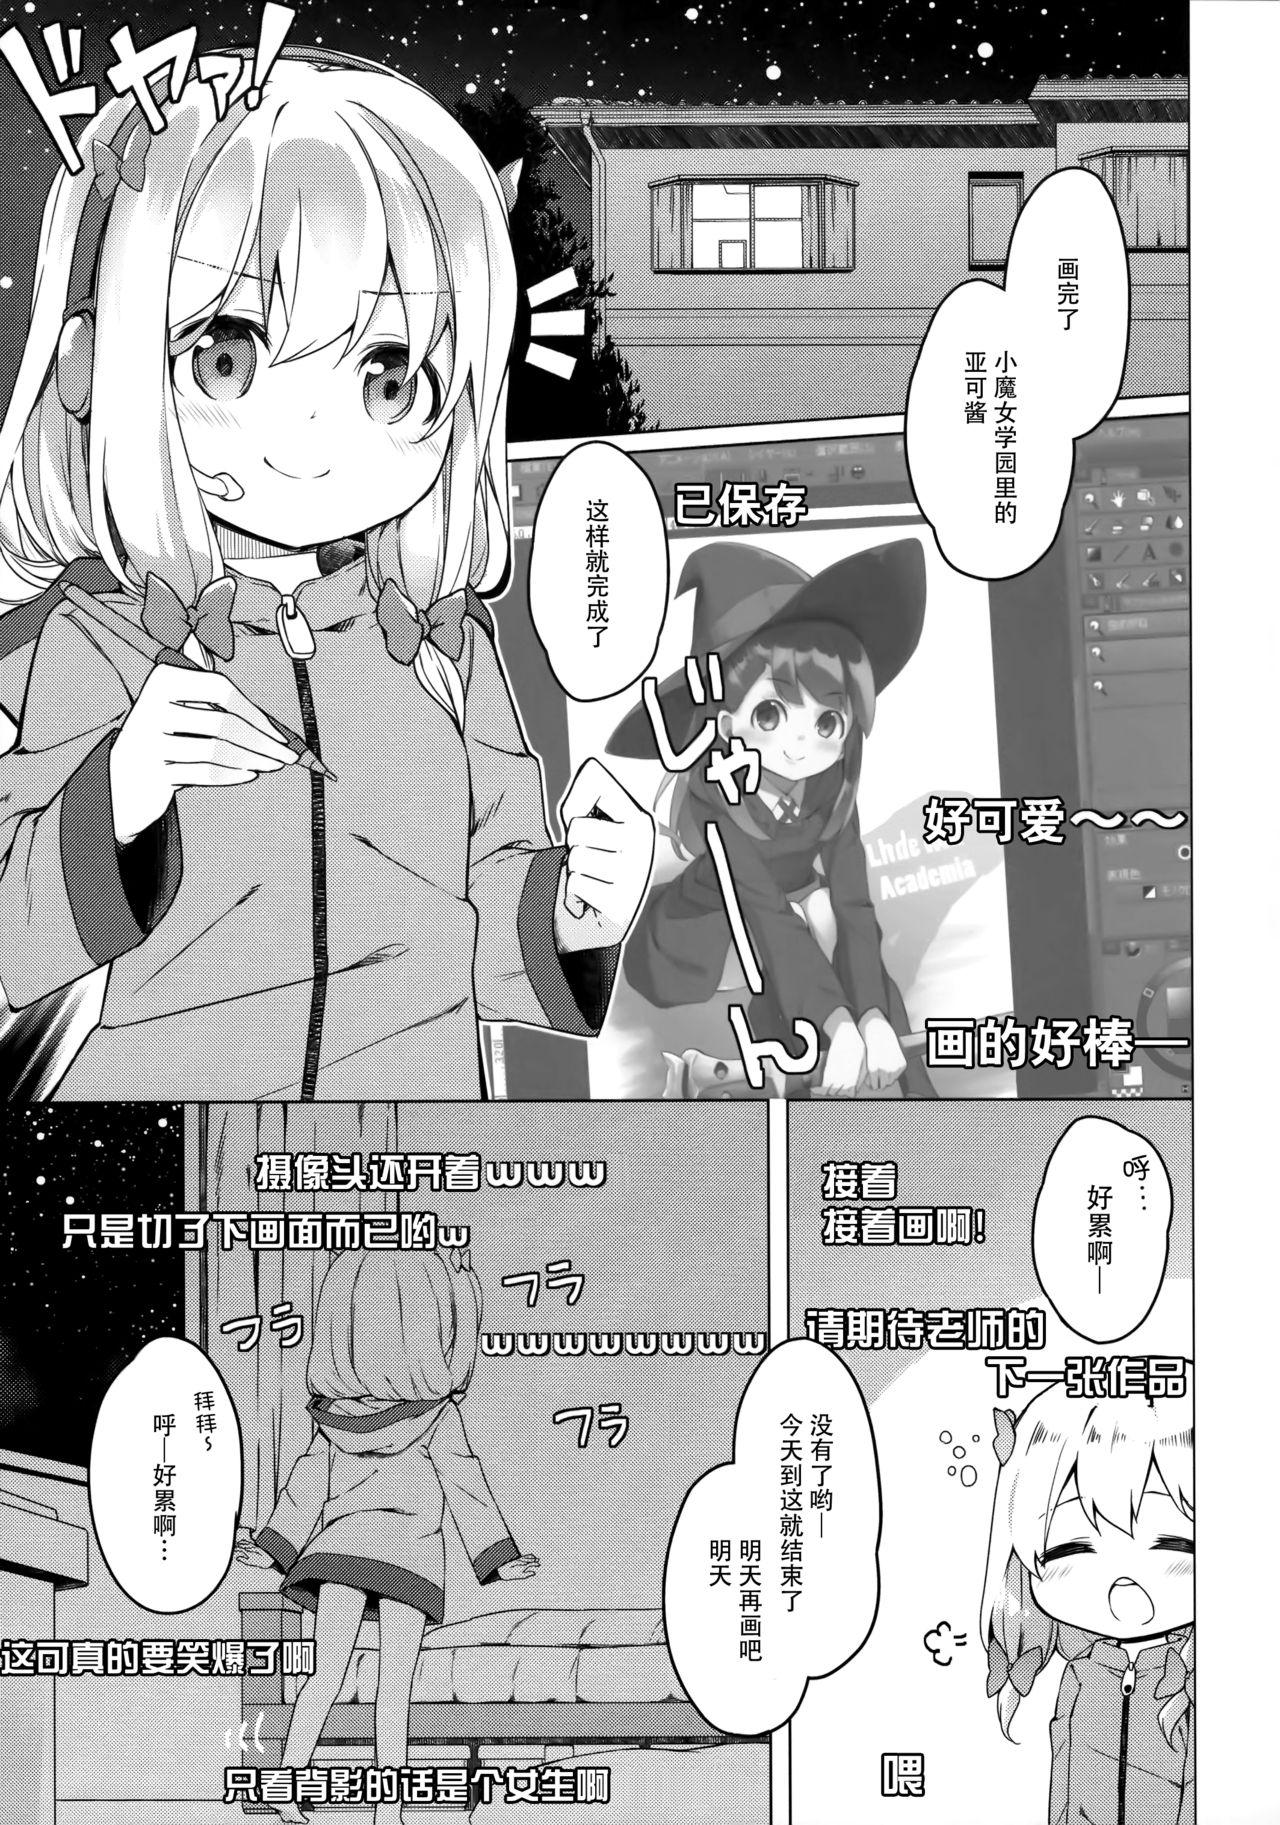 Stepsis Yatta ne Sagiri-chan Shiryou ga Fueru ne! - Eromanga sensei Oiled - Page 5